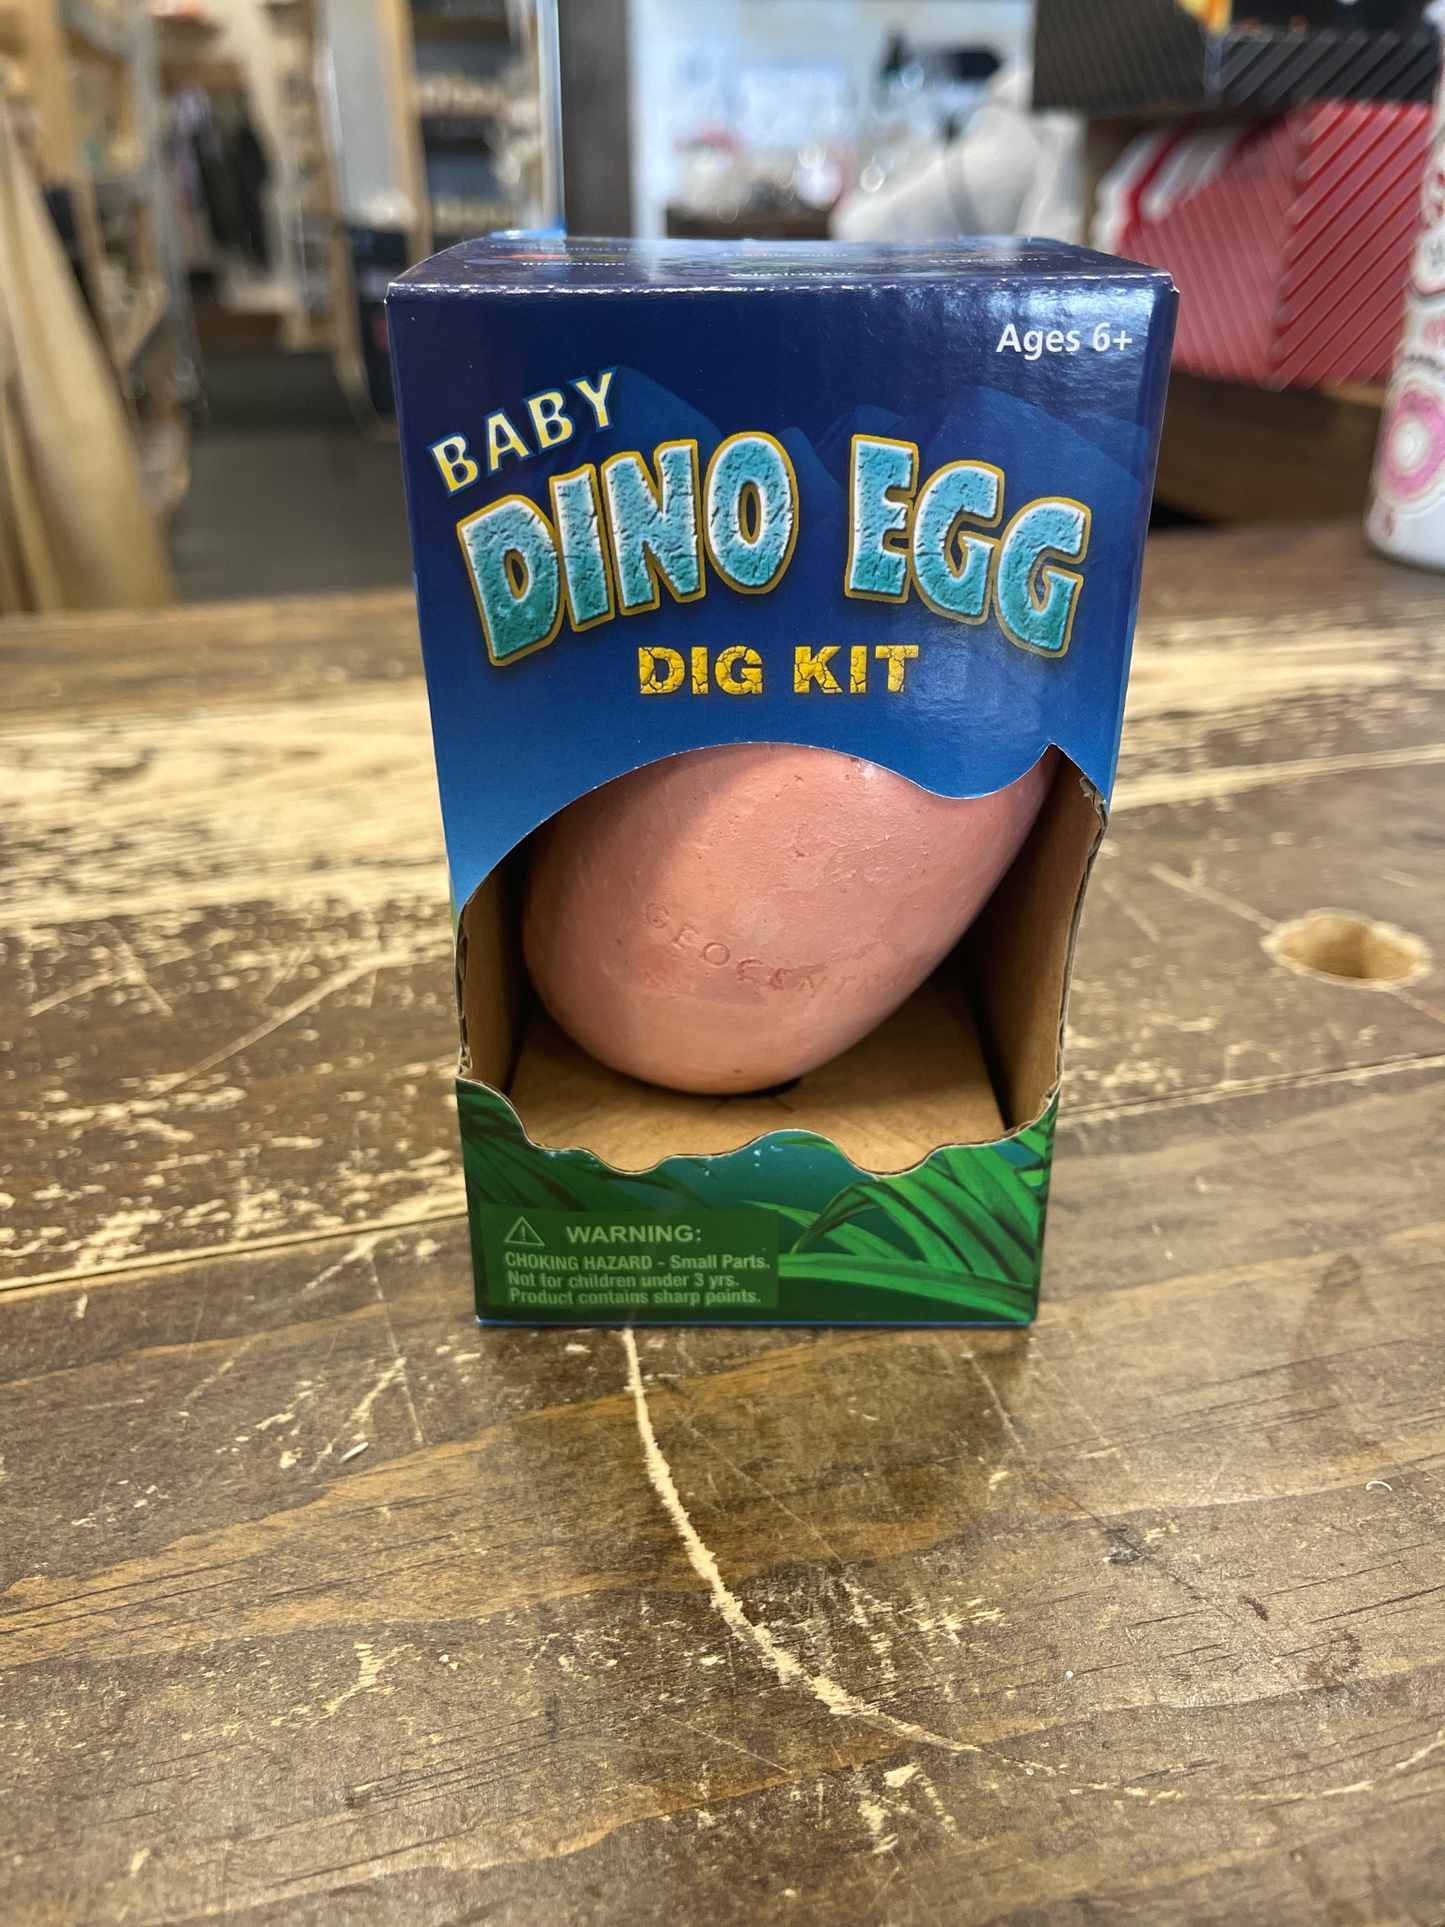 Baby Dino Egg Dig Kit